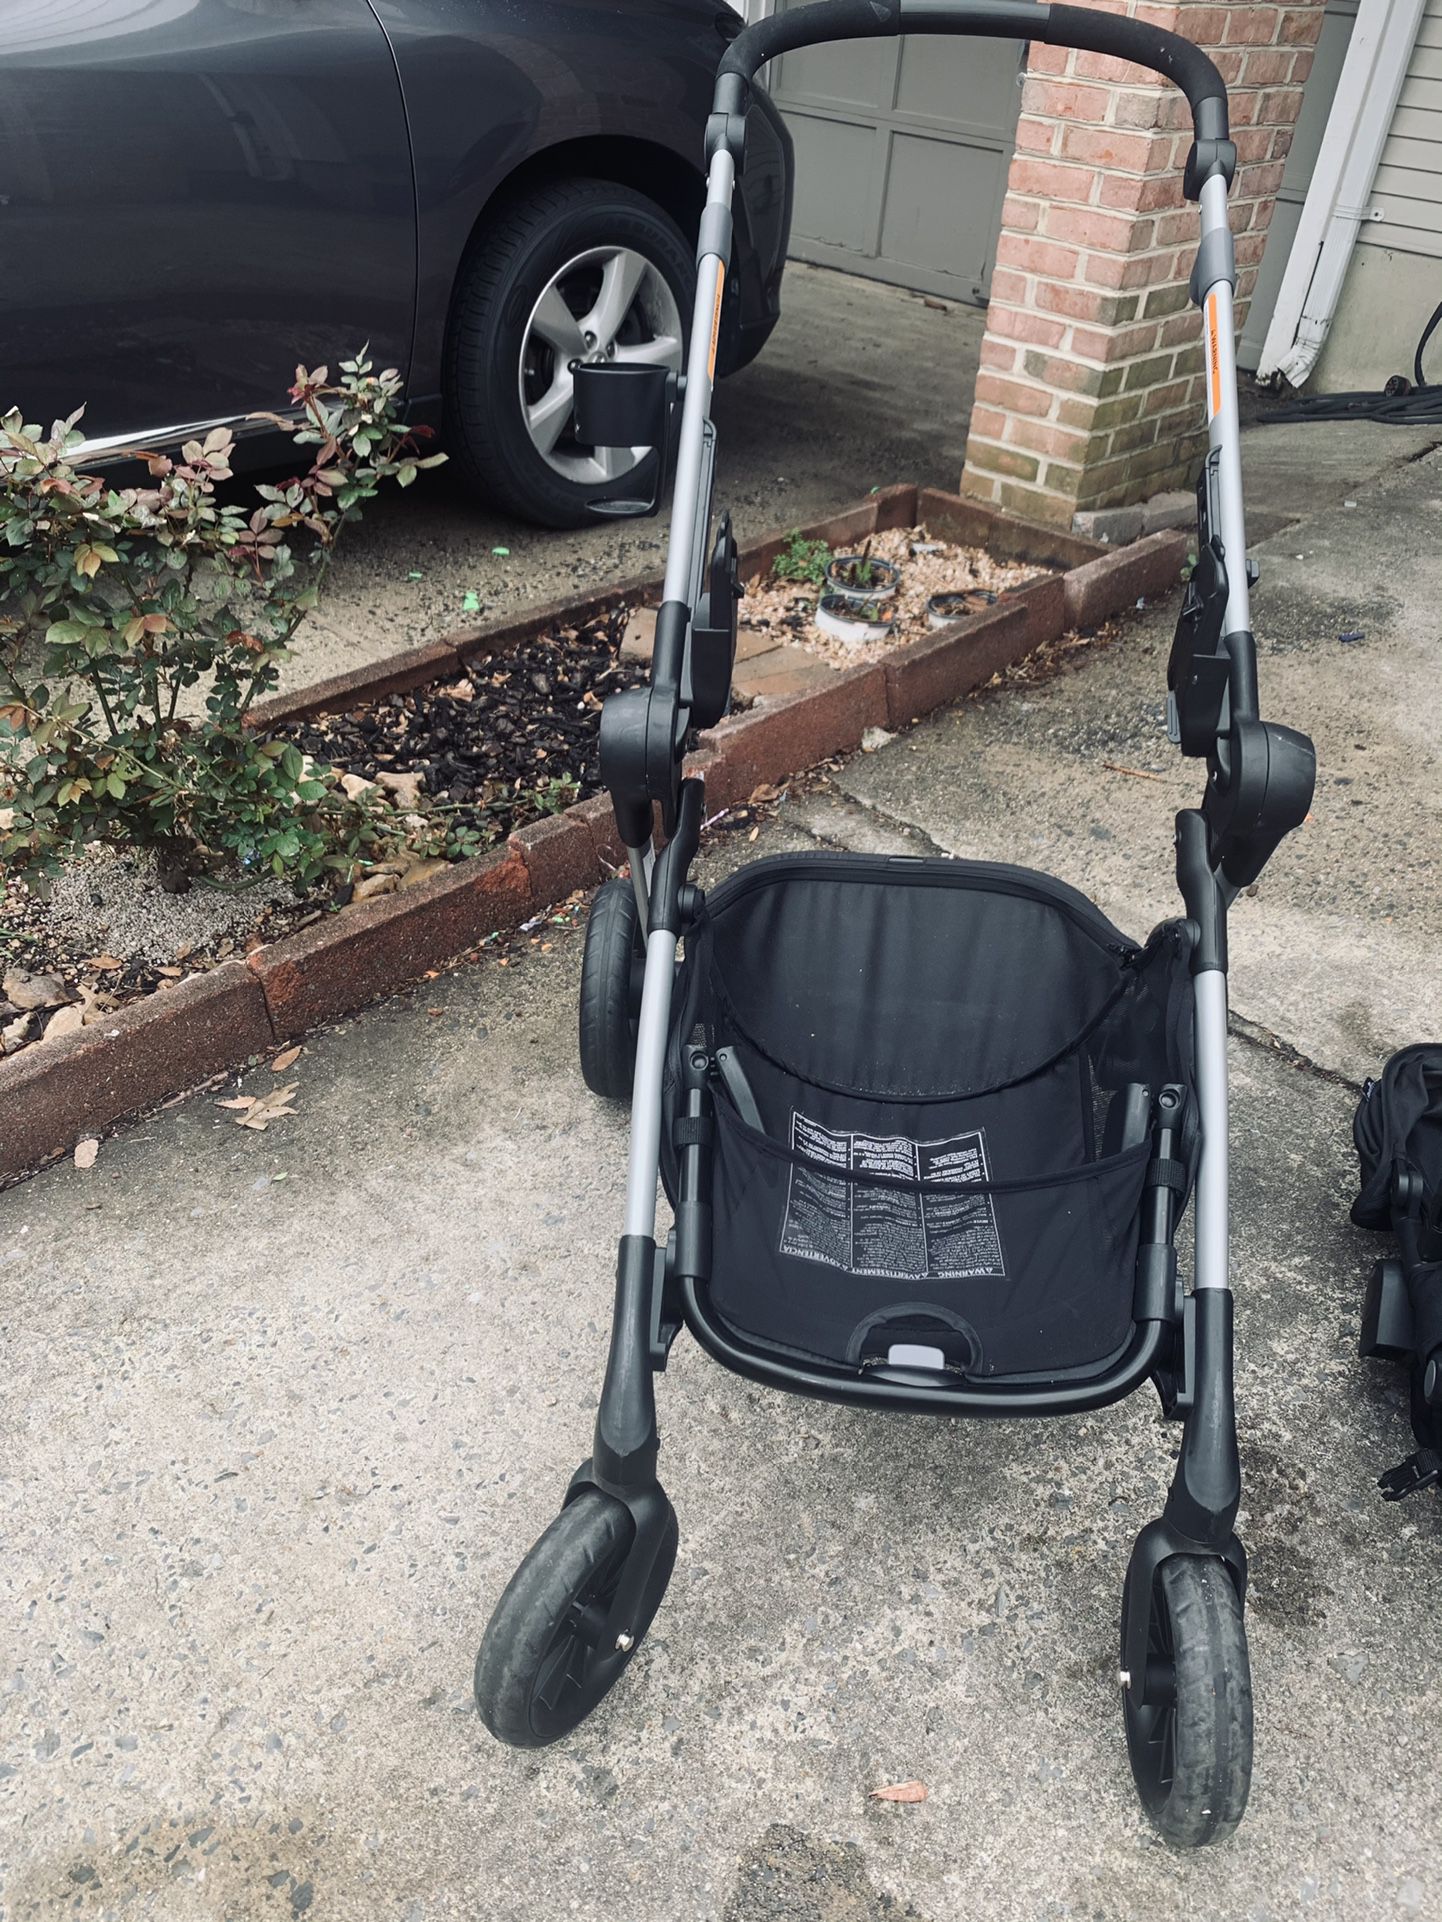 Baby Stroller - Like New